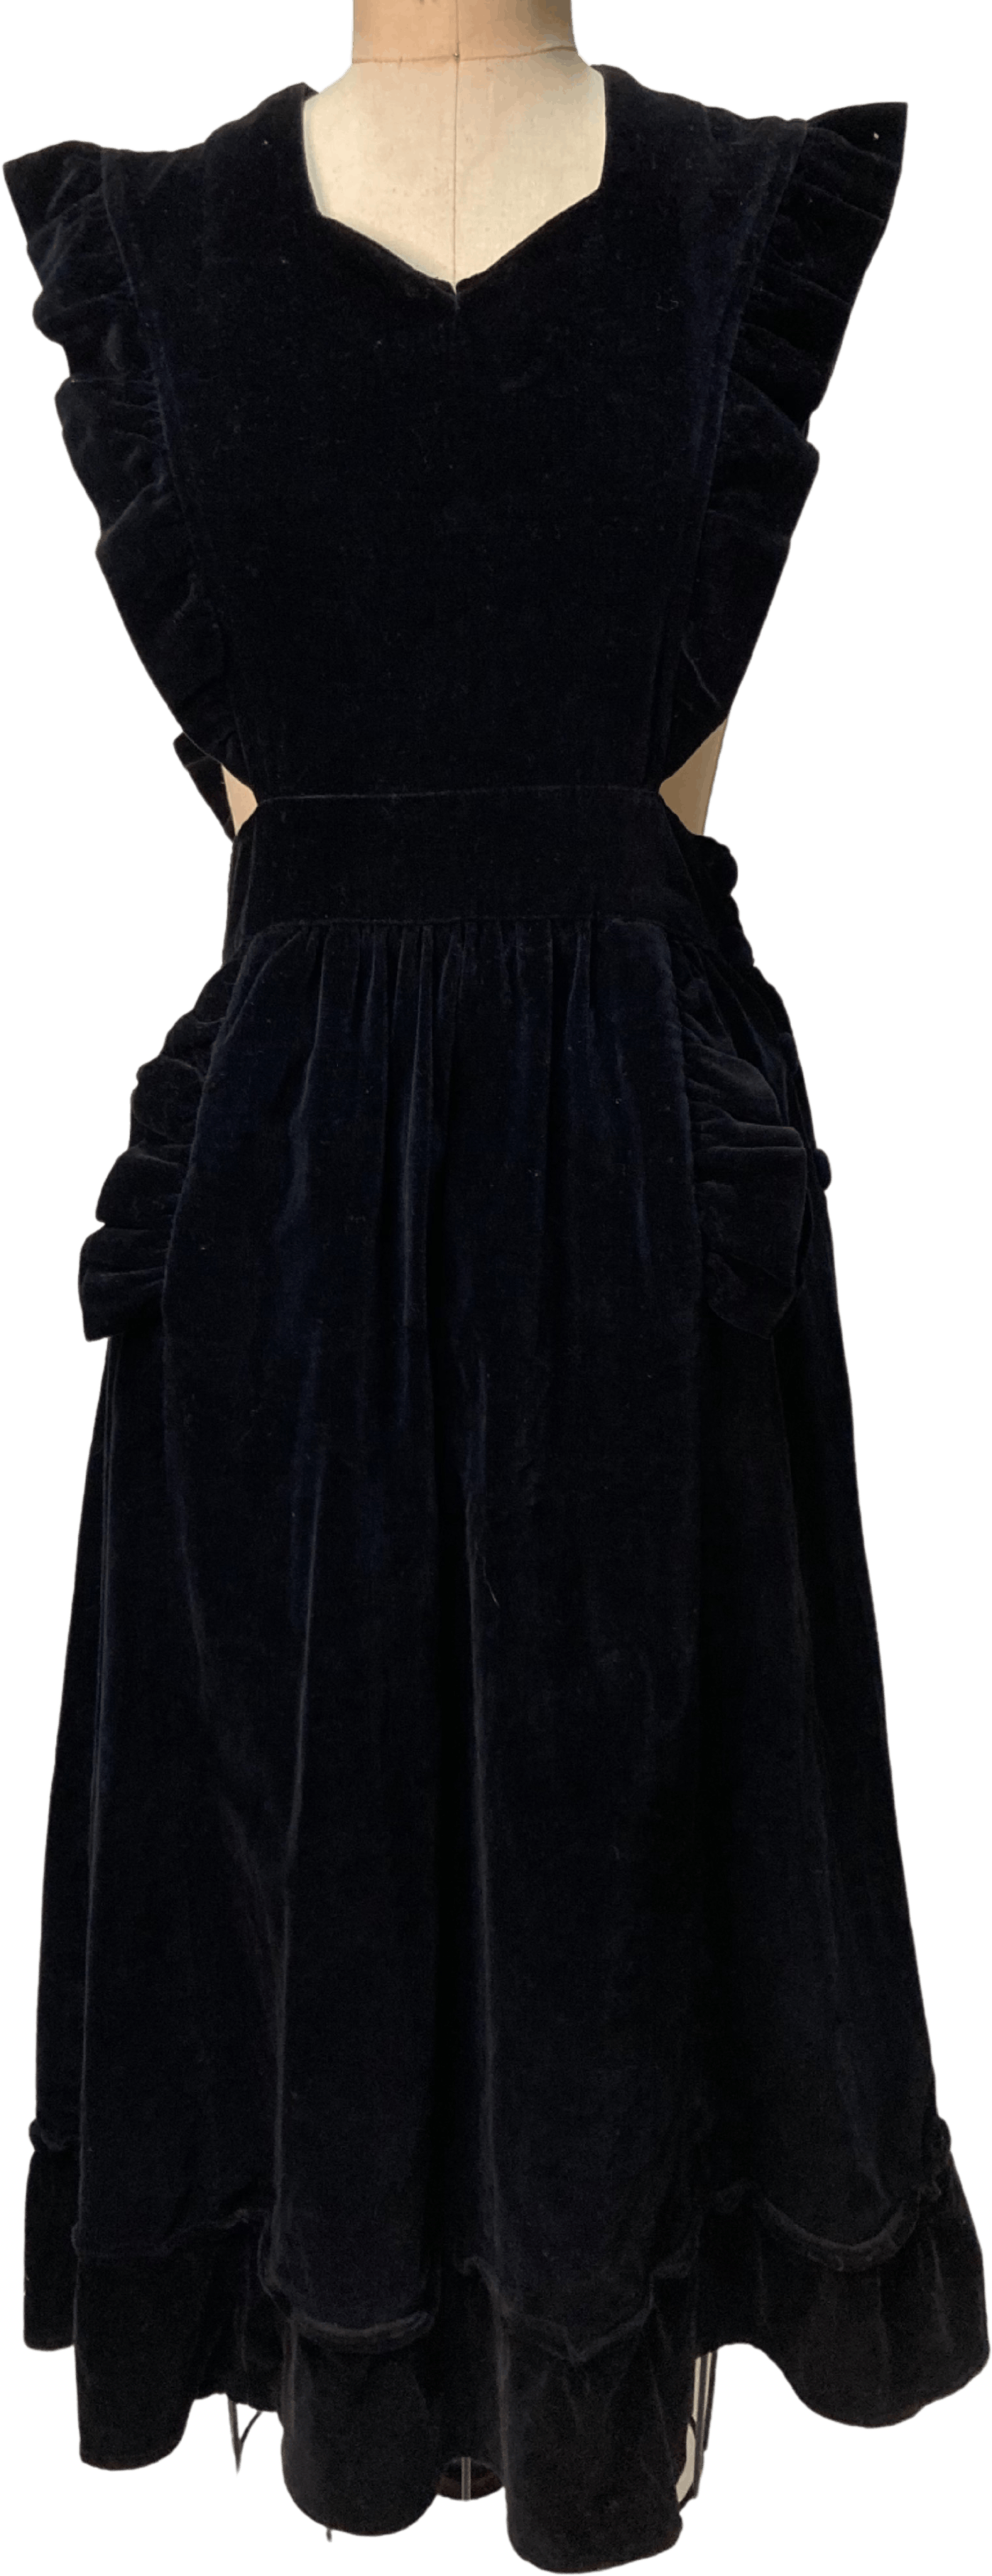 velvet apron dress with ruffles